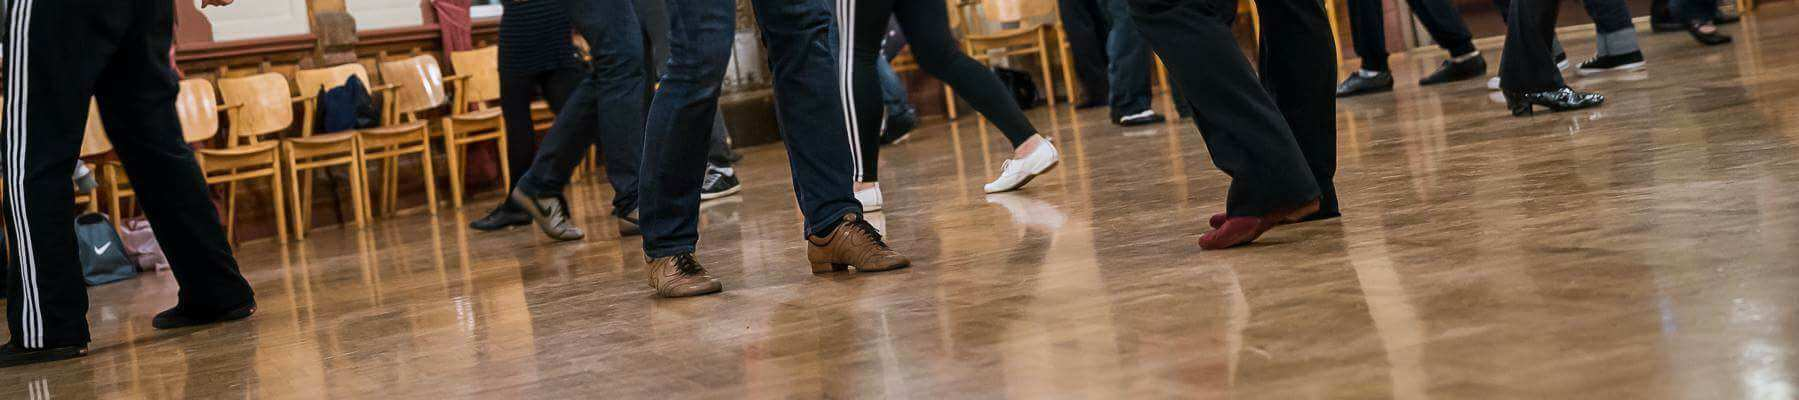 Ammattiopettajat huolehtivat, ettäkaikki oppivat tanssimaan mukavassa, kannustavassa ilmapiirissäja